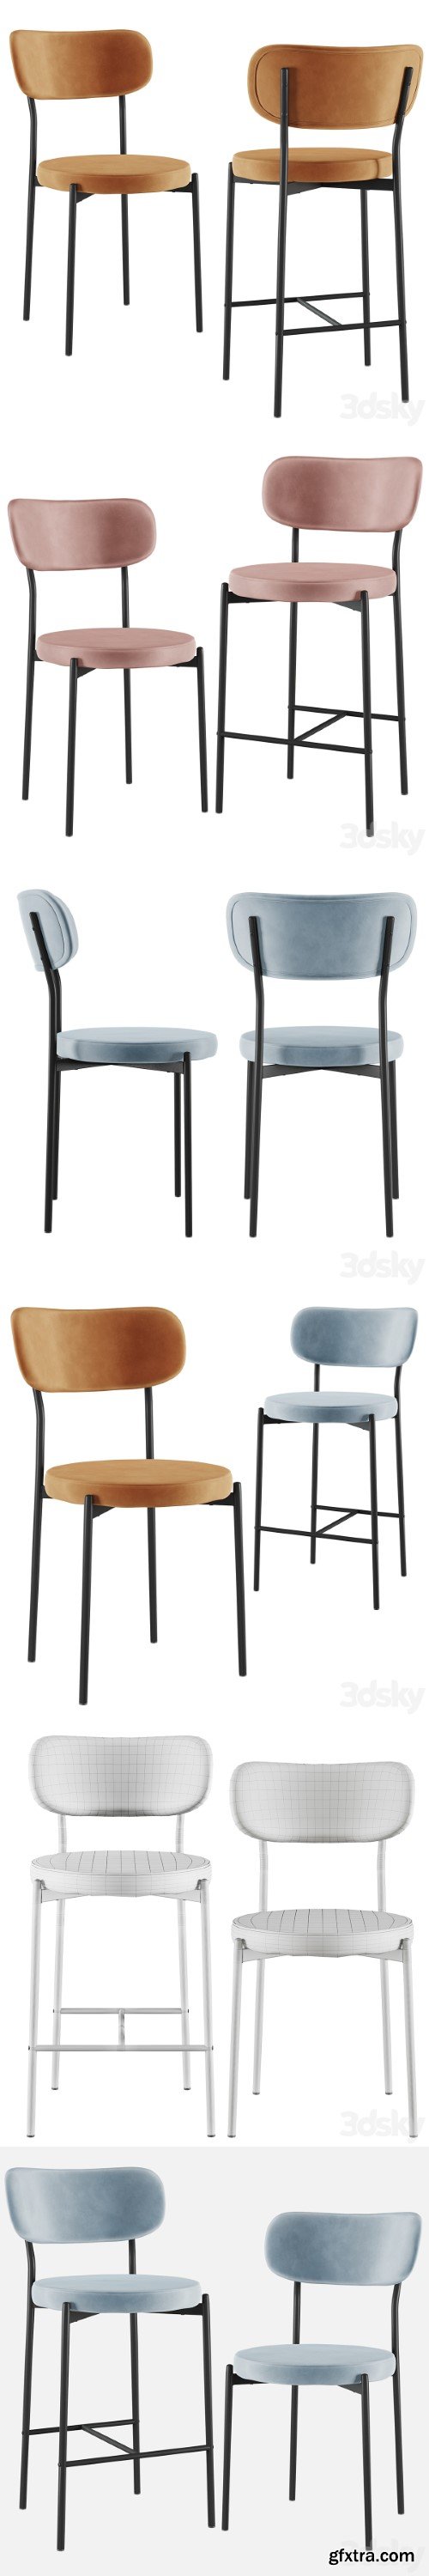 Chair&Bar stool Barbara black legs SG